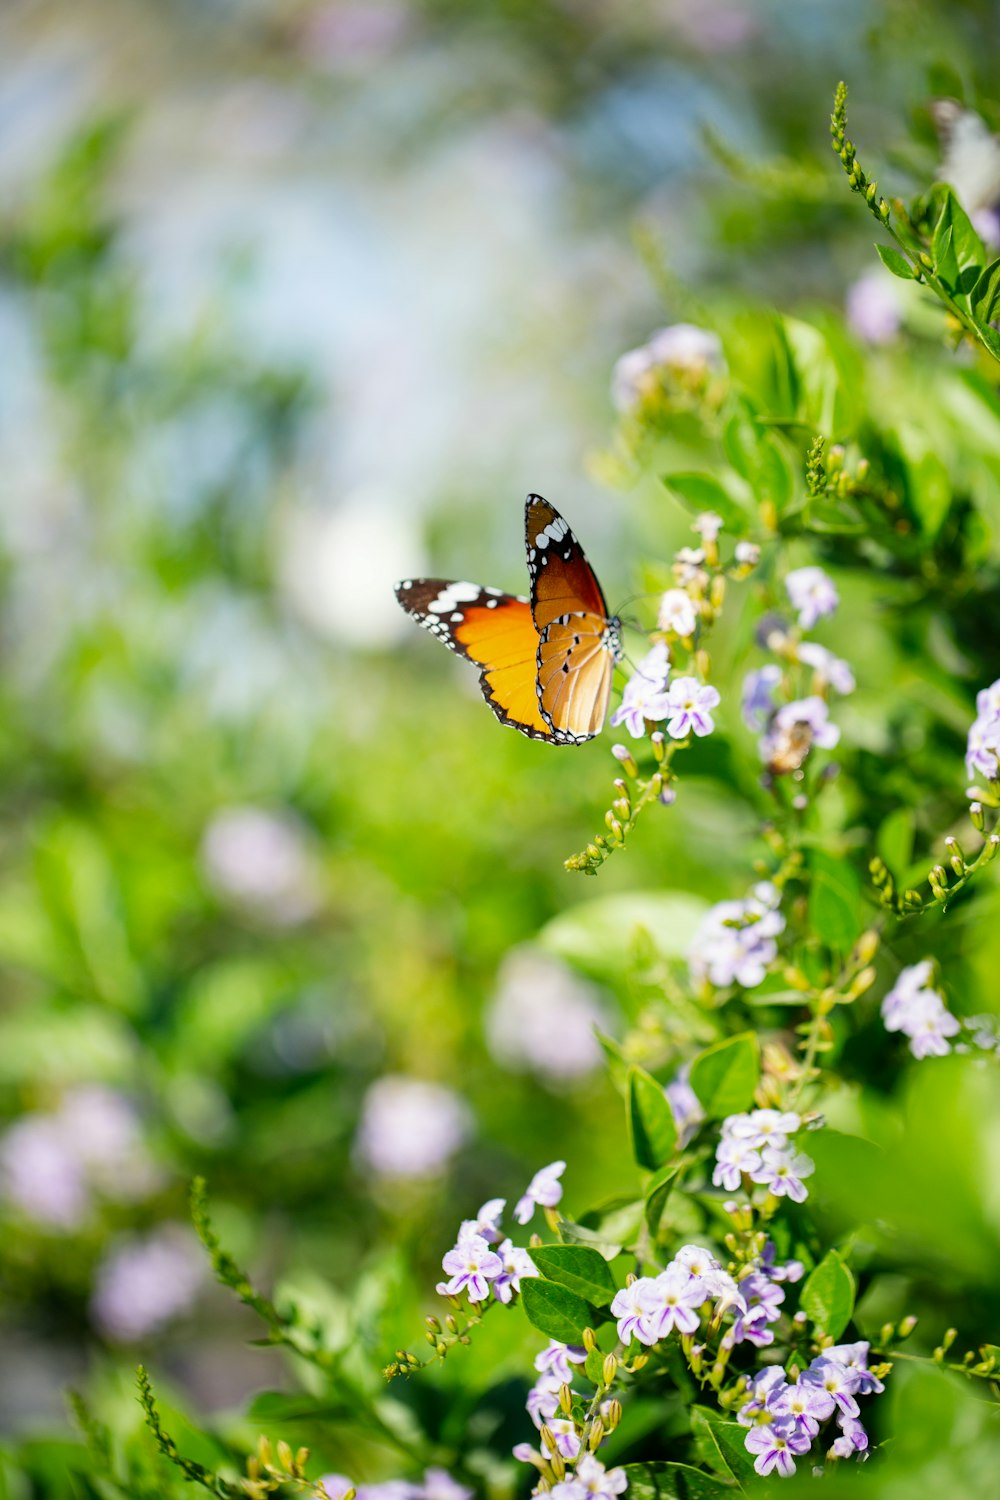 Brauner und schwarzer Schmetterling auf grüner Pflanze während des Tages